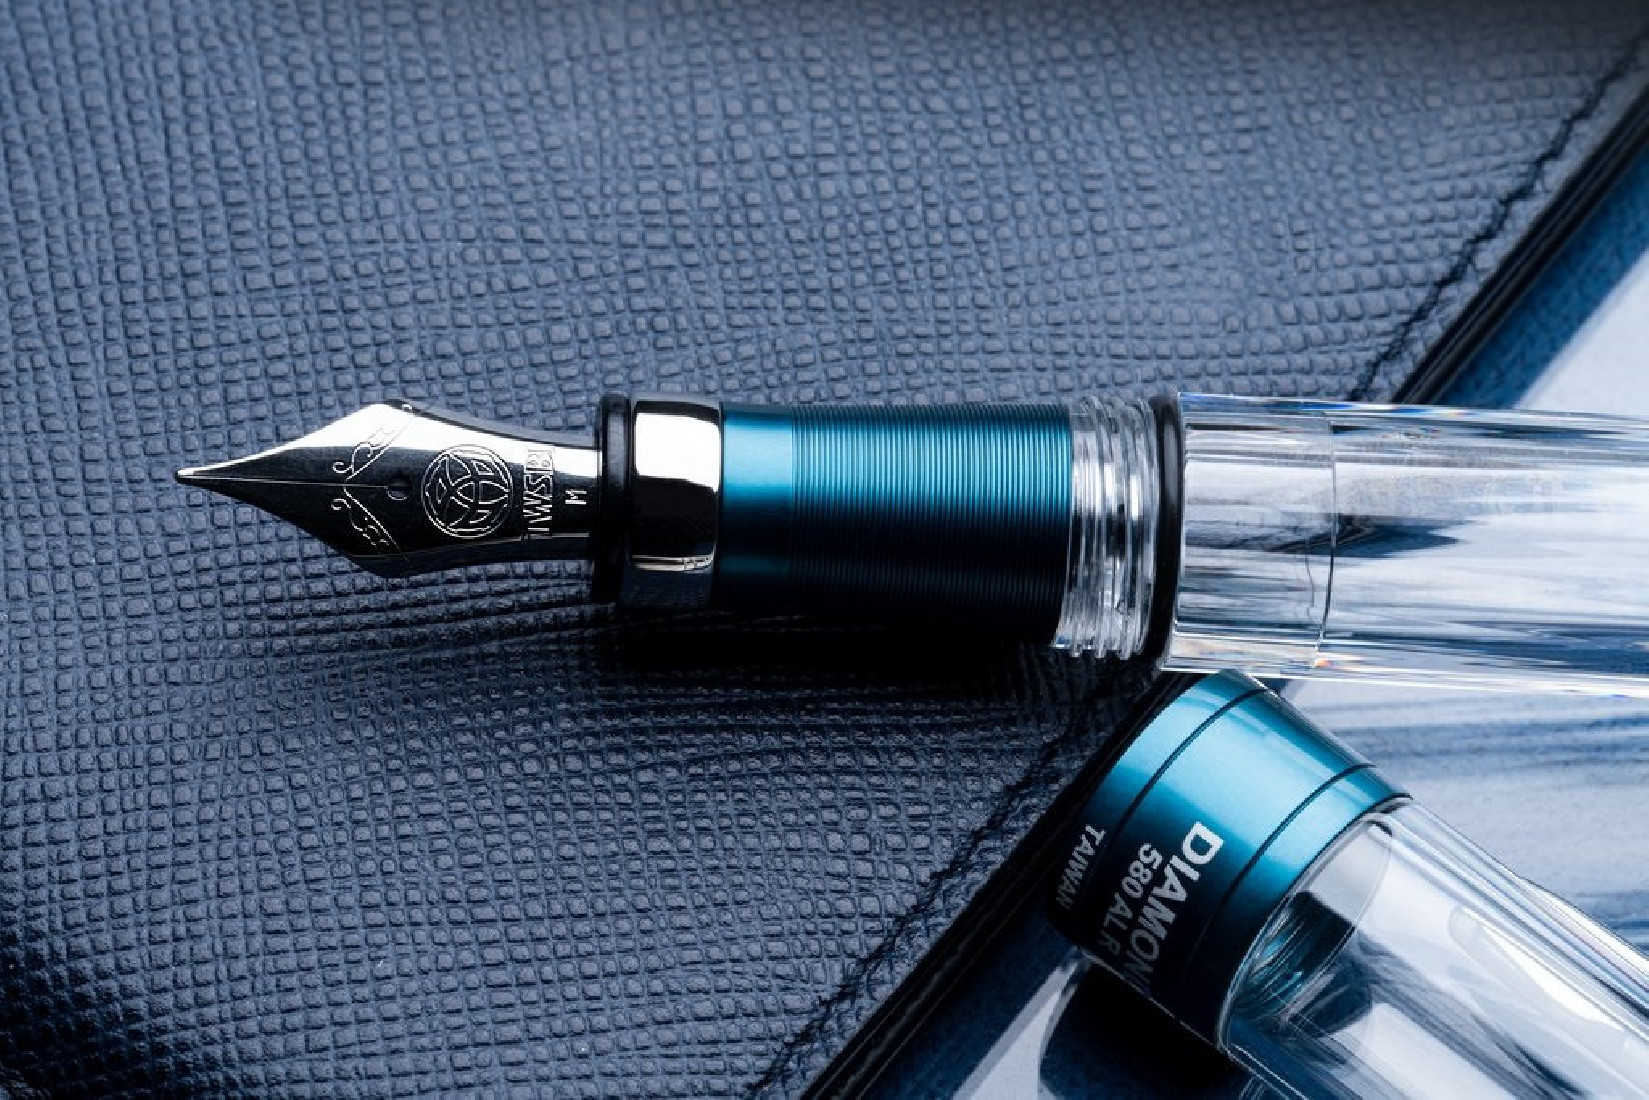 TWSBI Diamond 580AL R Prussian Blue Fountain pen